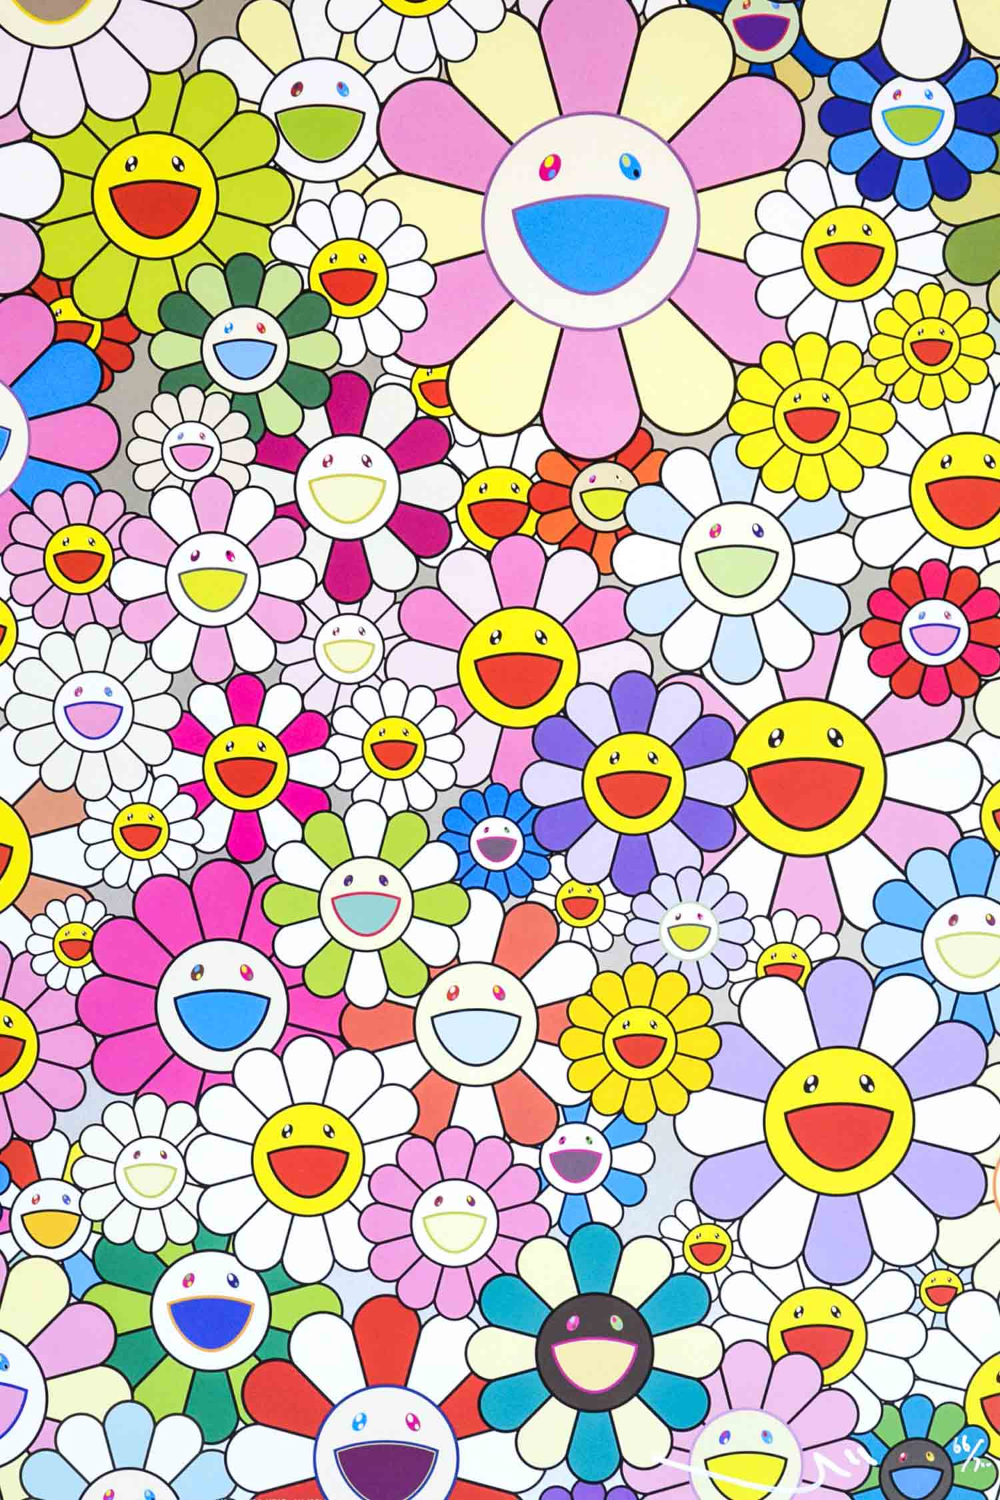 Takashi Murakami Flower Smile SOLD en 2020. Fond d'écran